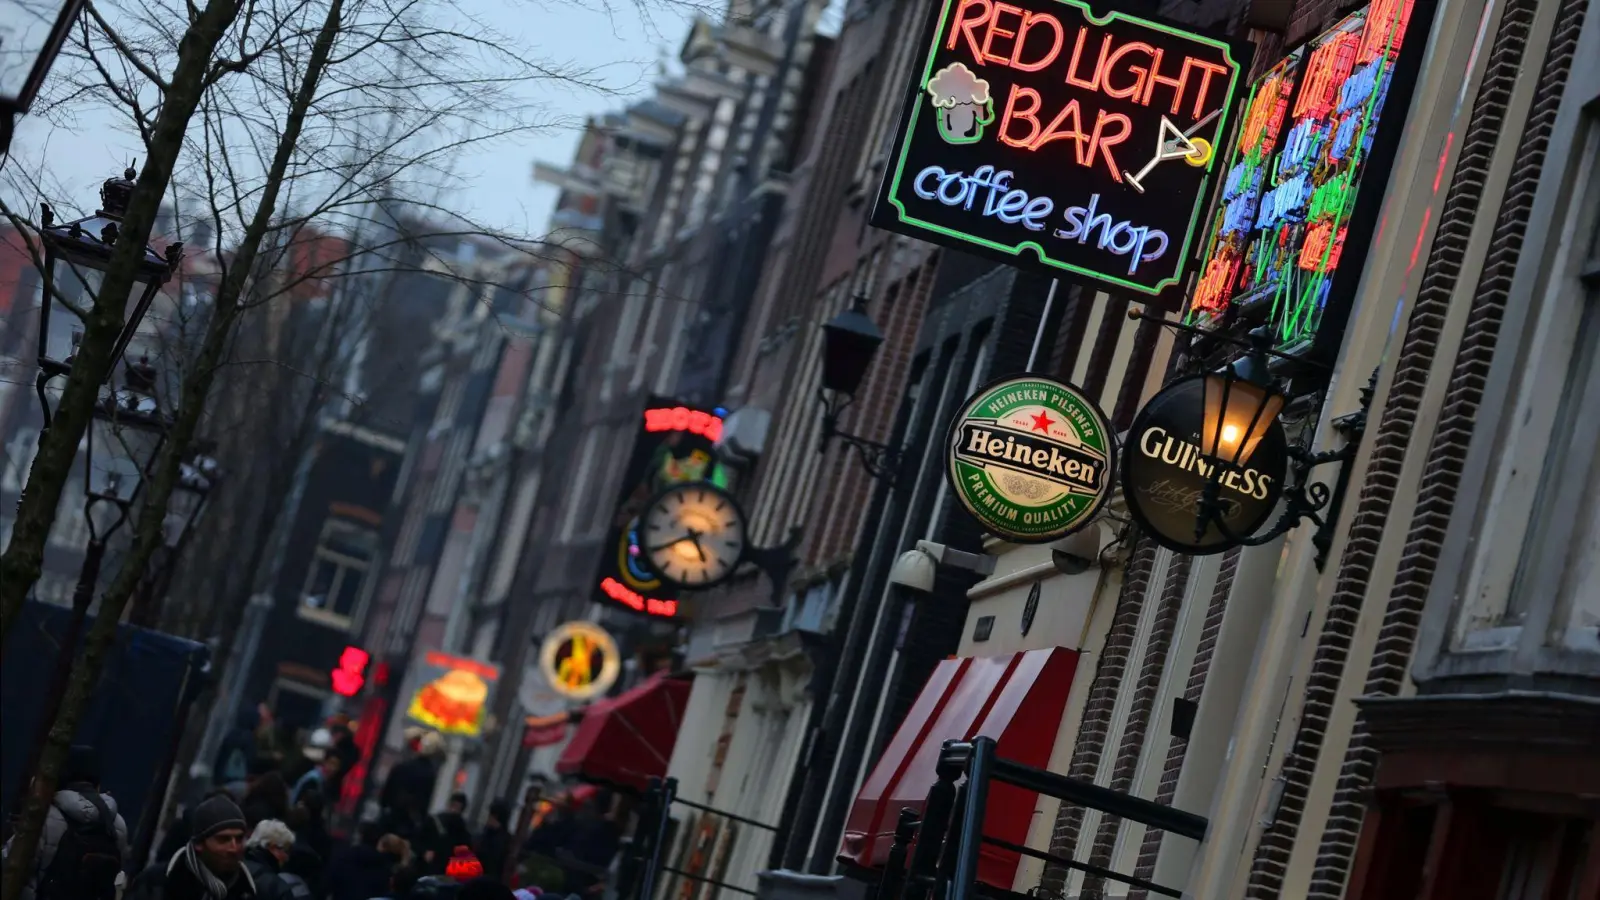 Anstelle des Rotlicht-Viertels soll in Amsterdam ein Erotik-Zentrum entstehen. Doch es regt sich Protest. (Foto: Oliver Berg/dpa)